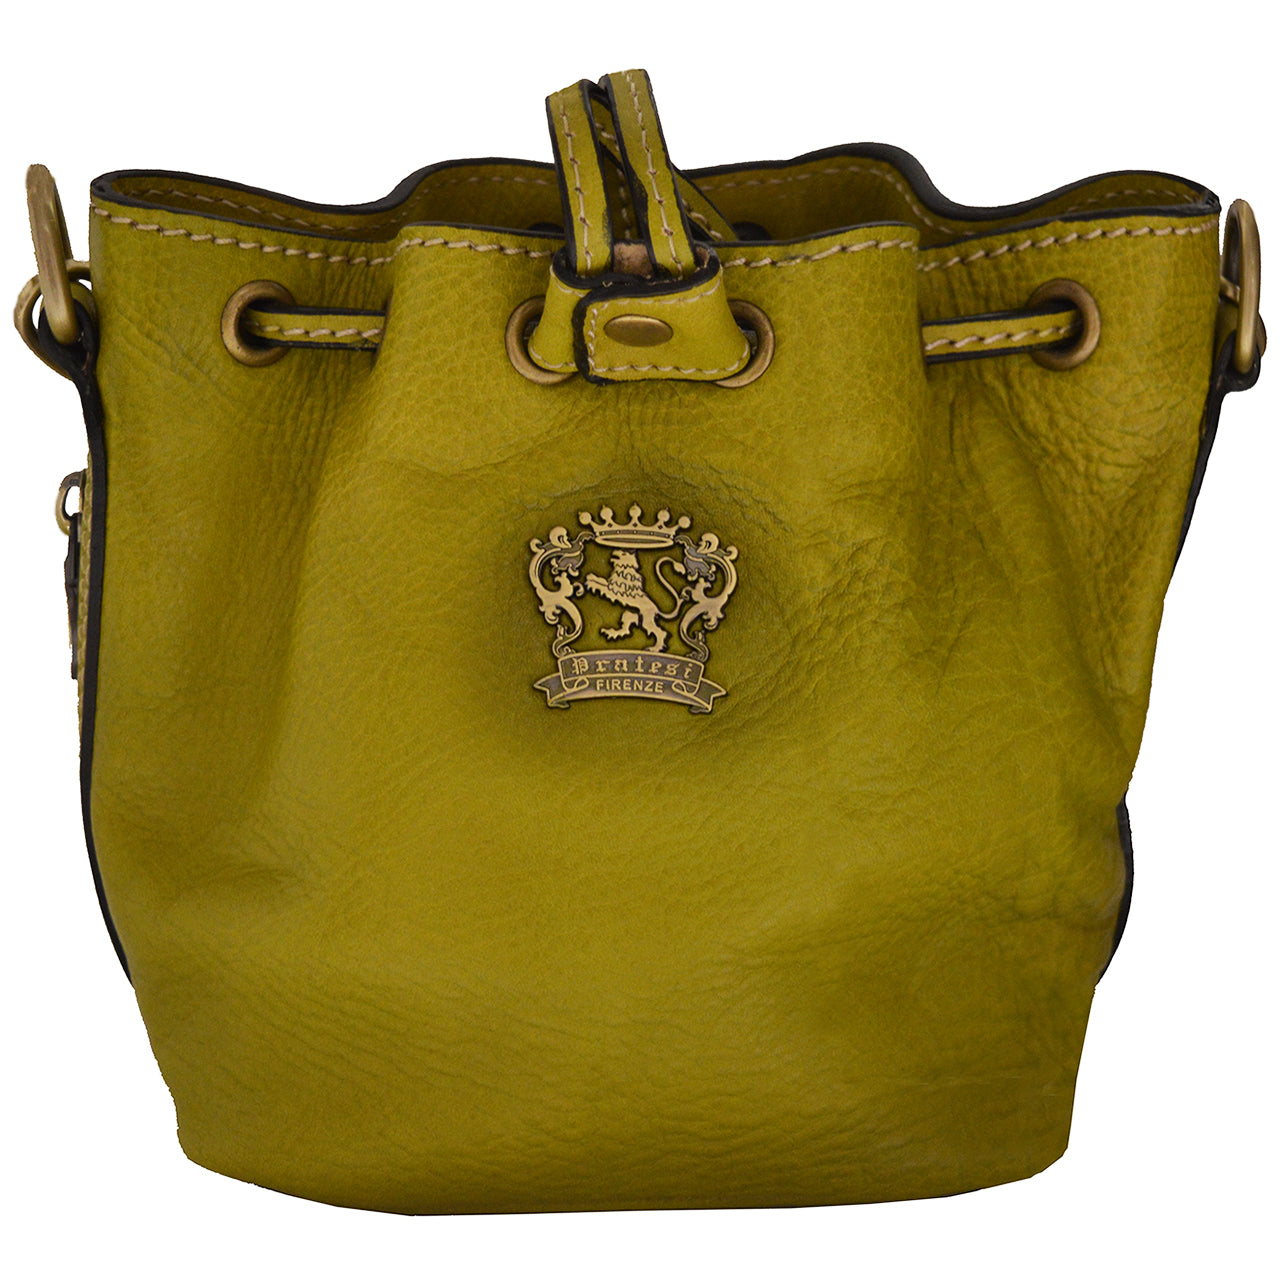 Pratesi Sorano Small Woman Bag in genuine Italian leather - Sorano Green